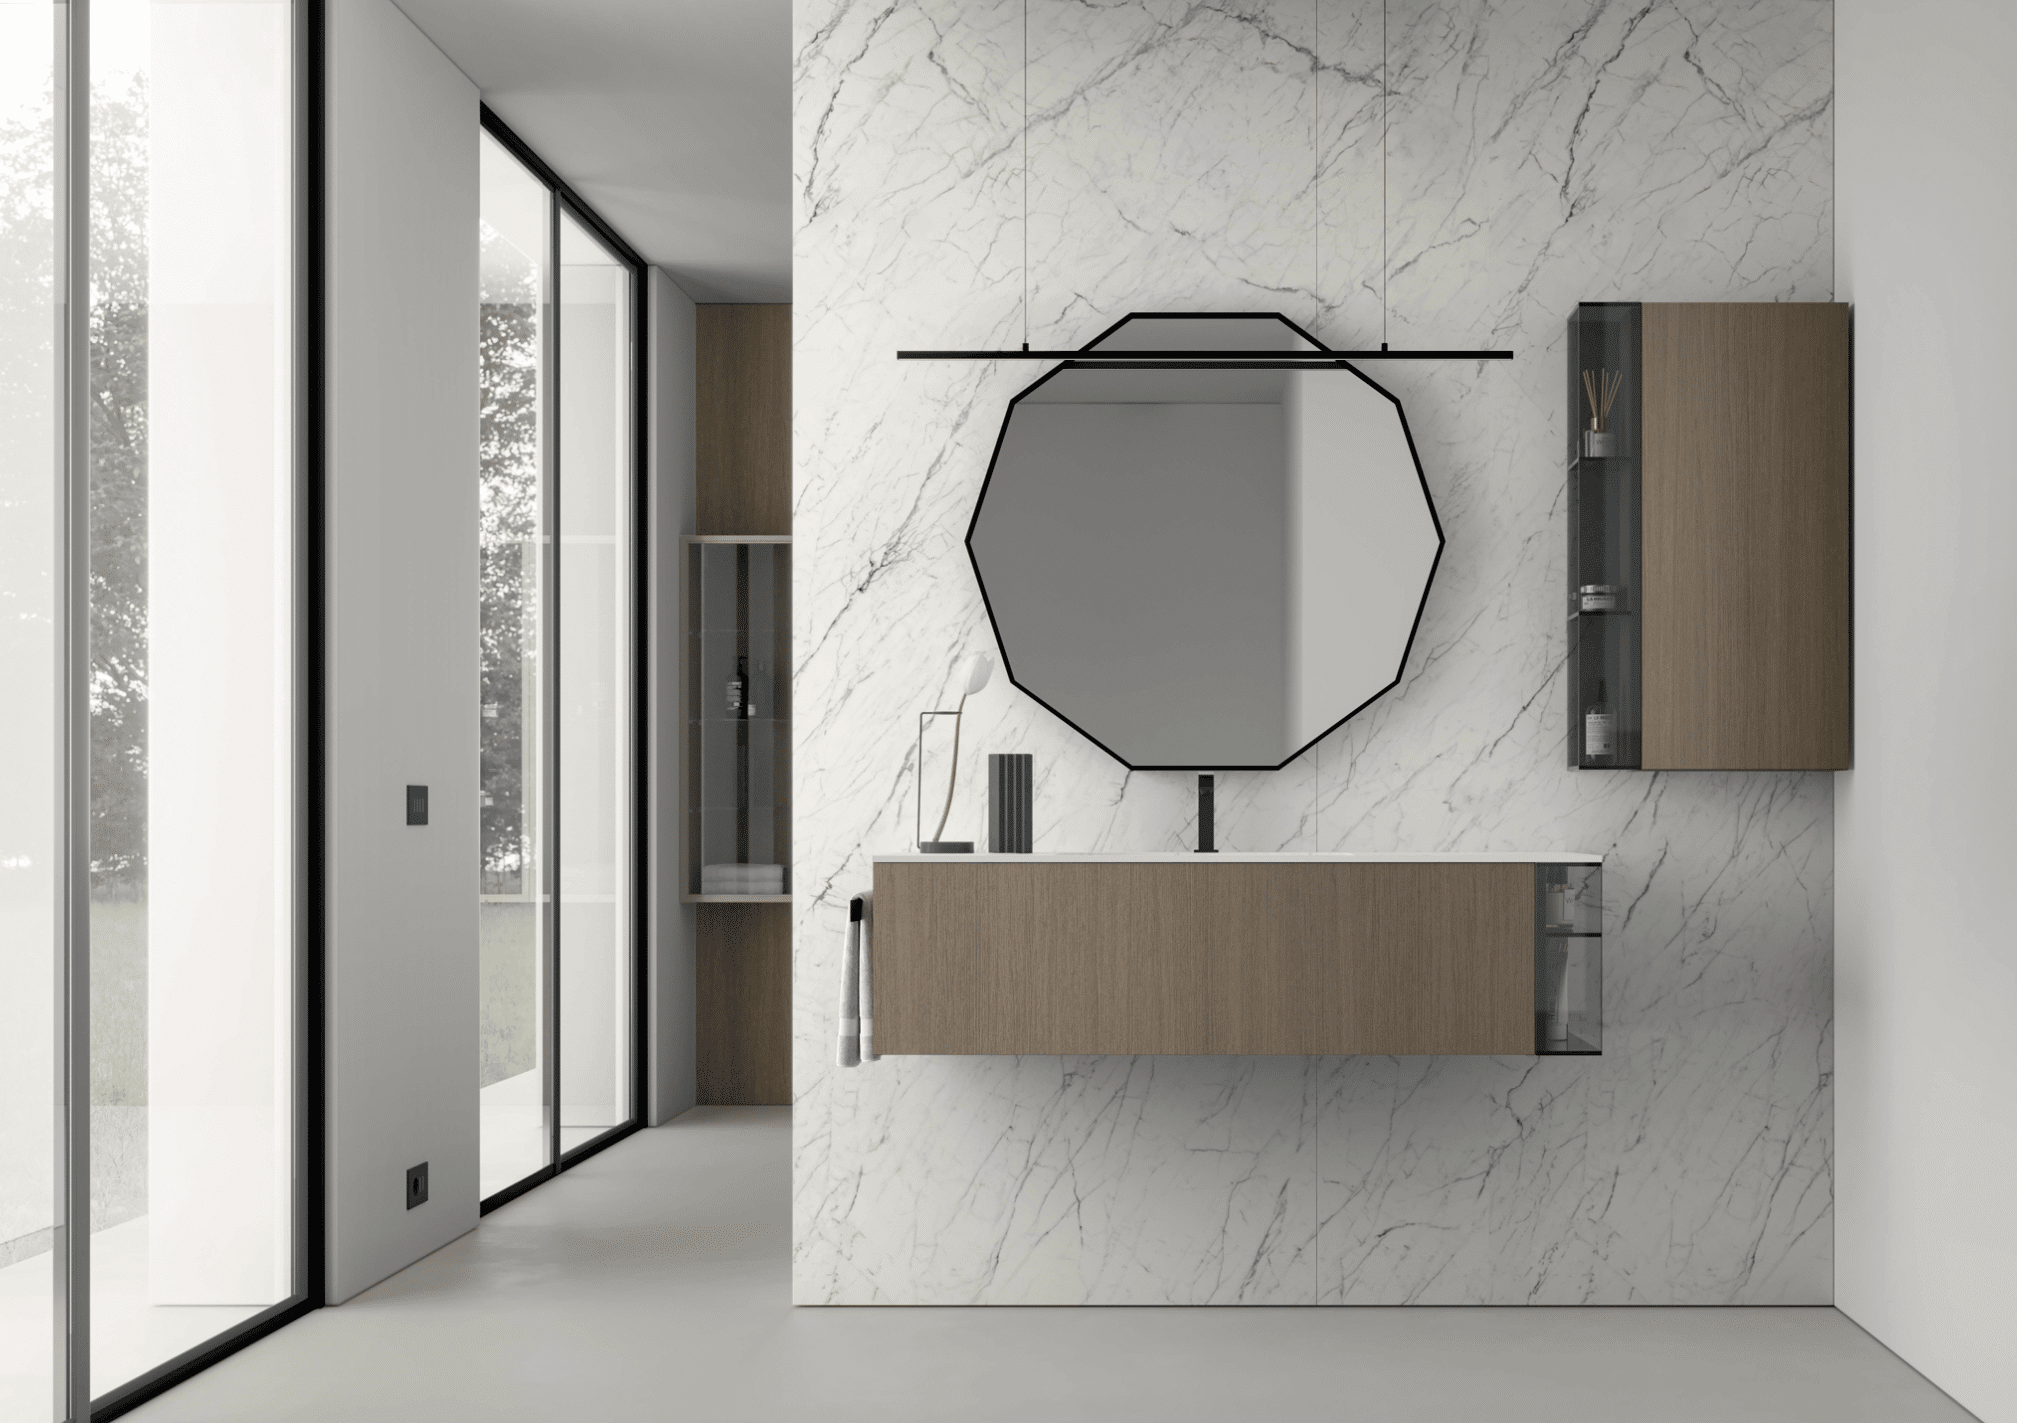 IDEA GROUP zeigt ein minimalistisch, modernes Badezimmer mit Waschtisch an der Wand mit weißen Marmorfliesen, zehn-eckigem Spiegel und Hängeschrank.